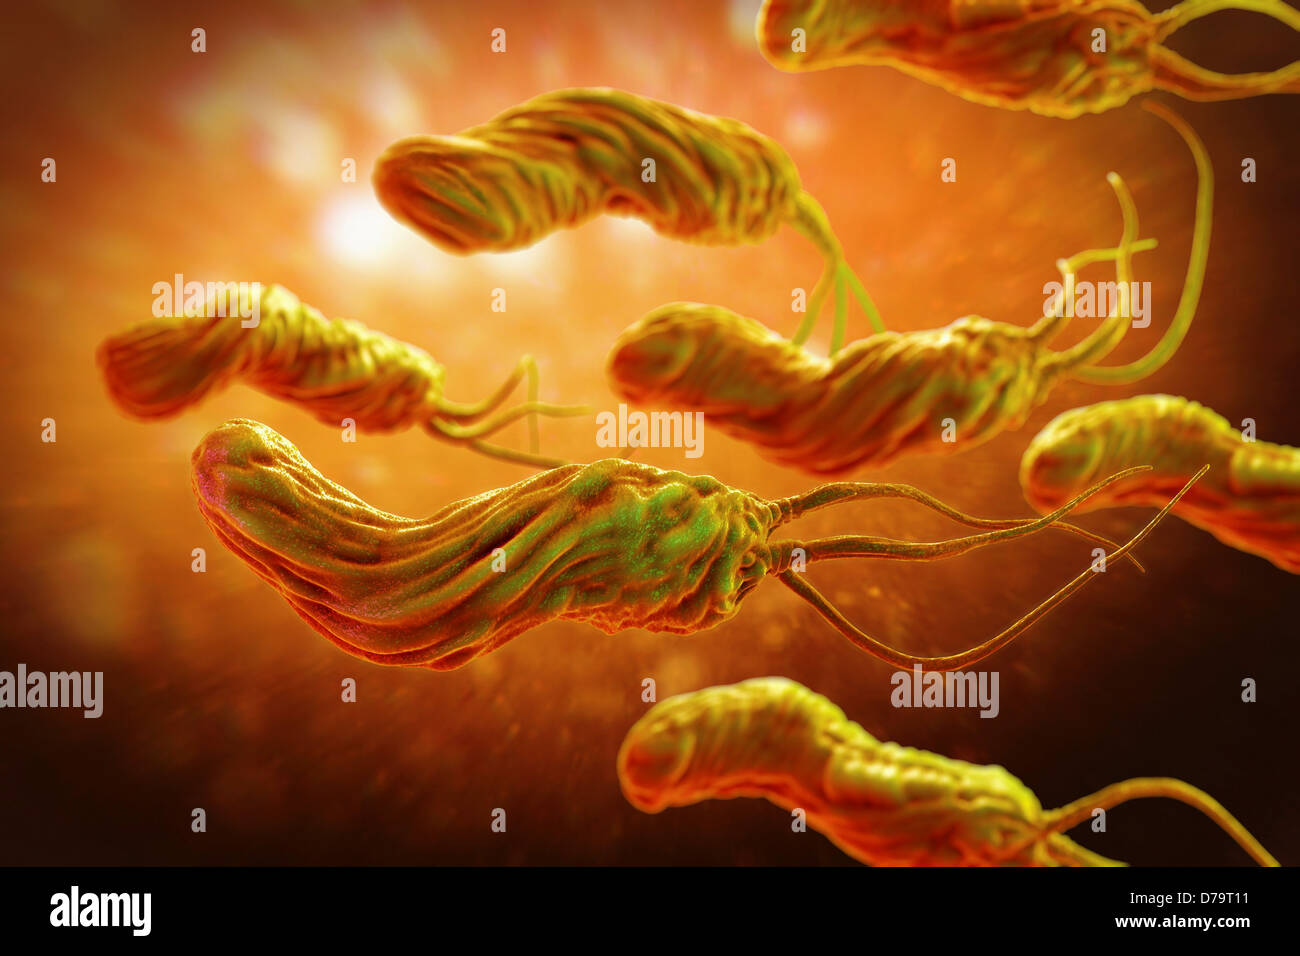 Причины появления бактерий в желудке. Helicobacter pylori под микроскопом.